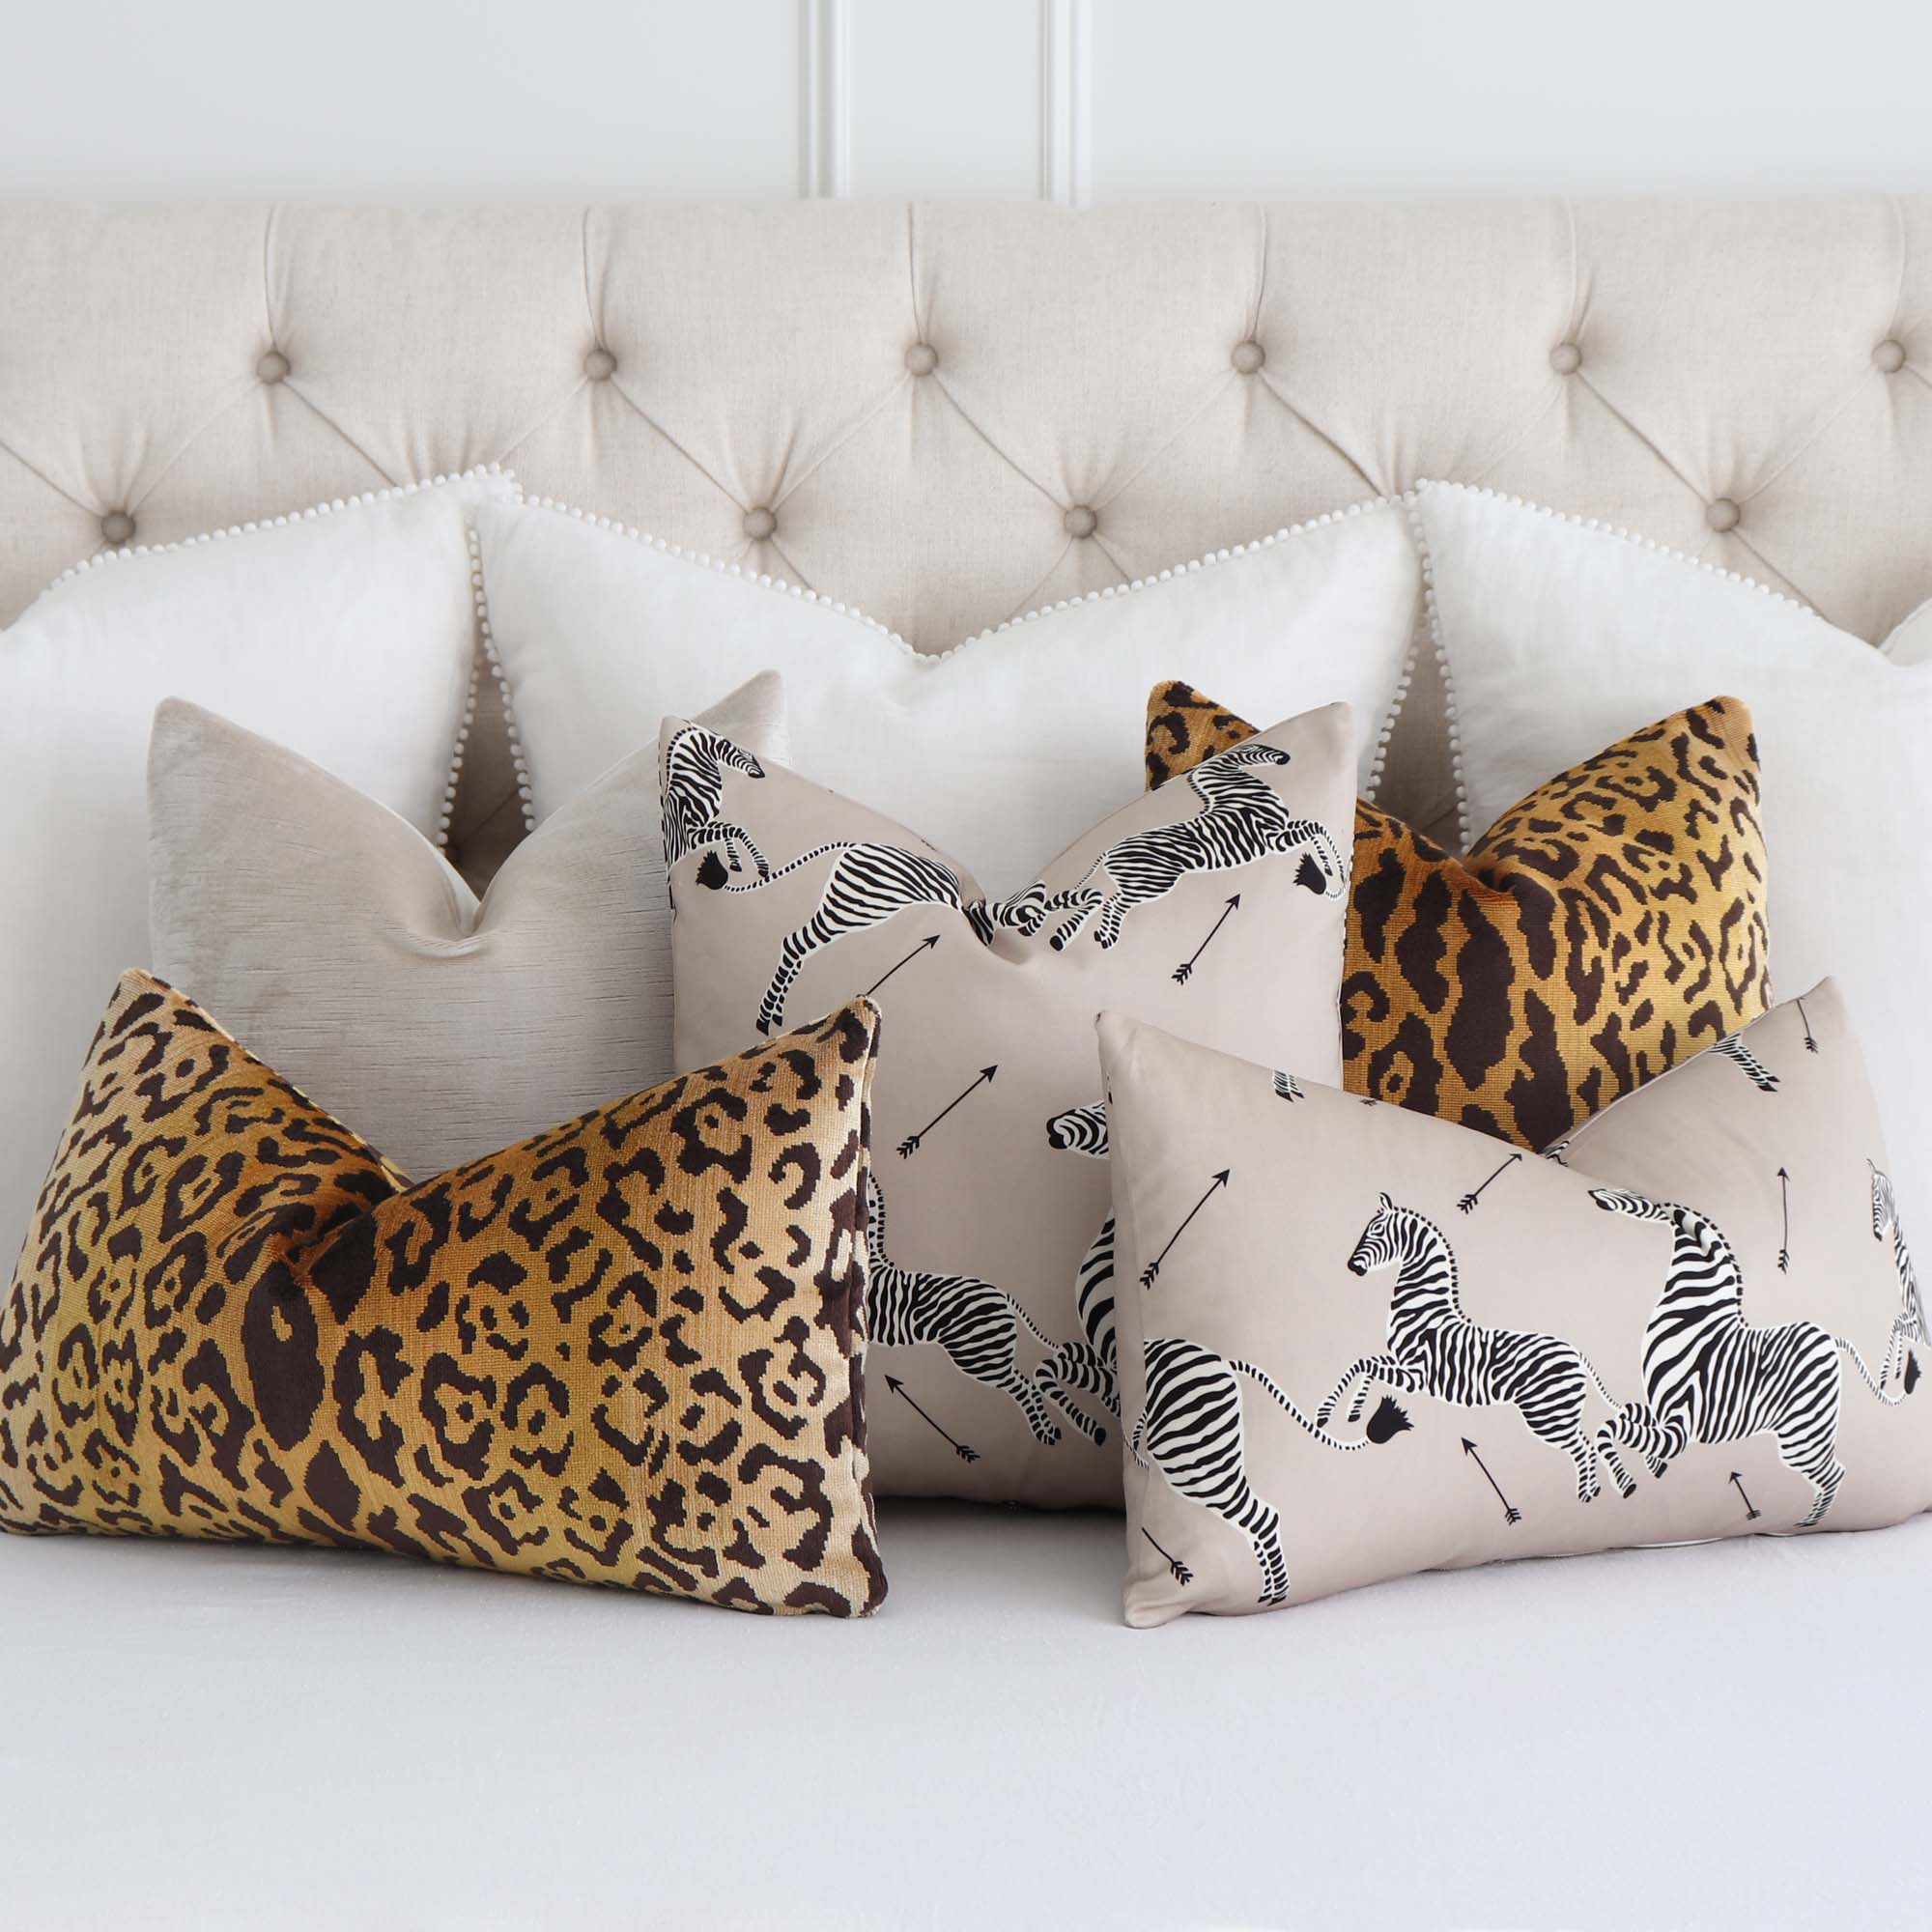 Scalamandre Leopardo Ivory Gold Black Silk Velvet Animal Skin Pattern Designer Throw Pillow Cover in Pillow Mix on Bed